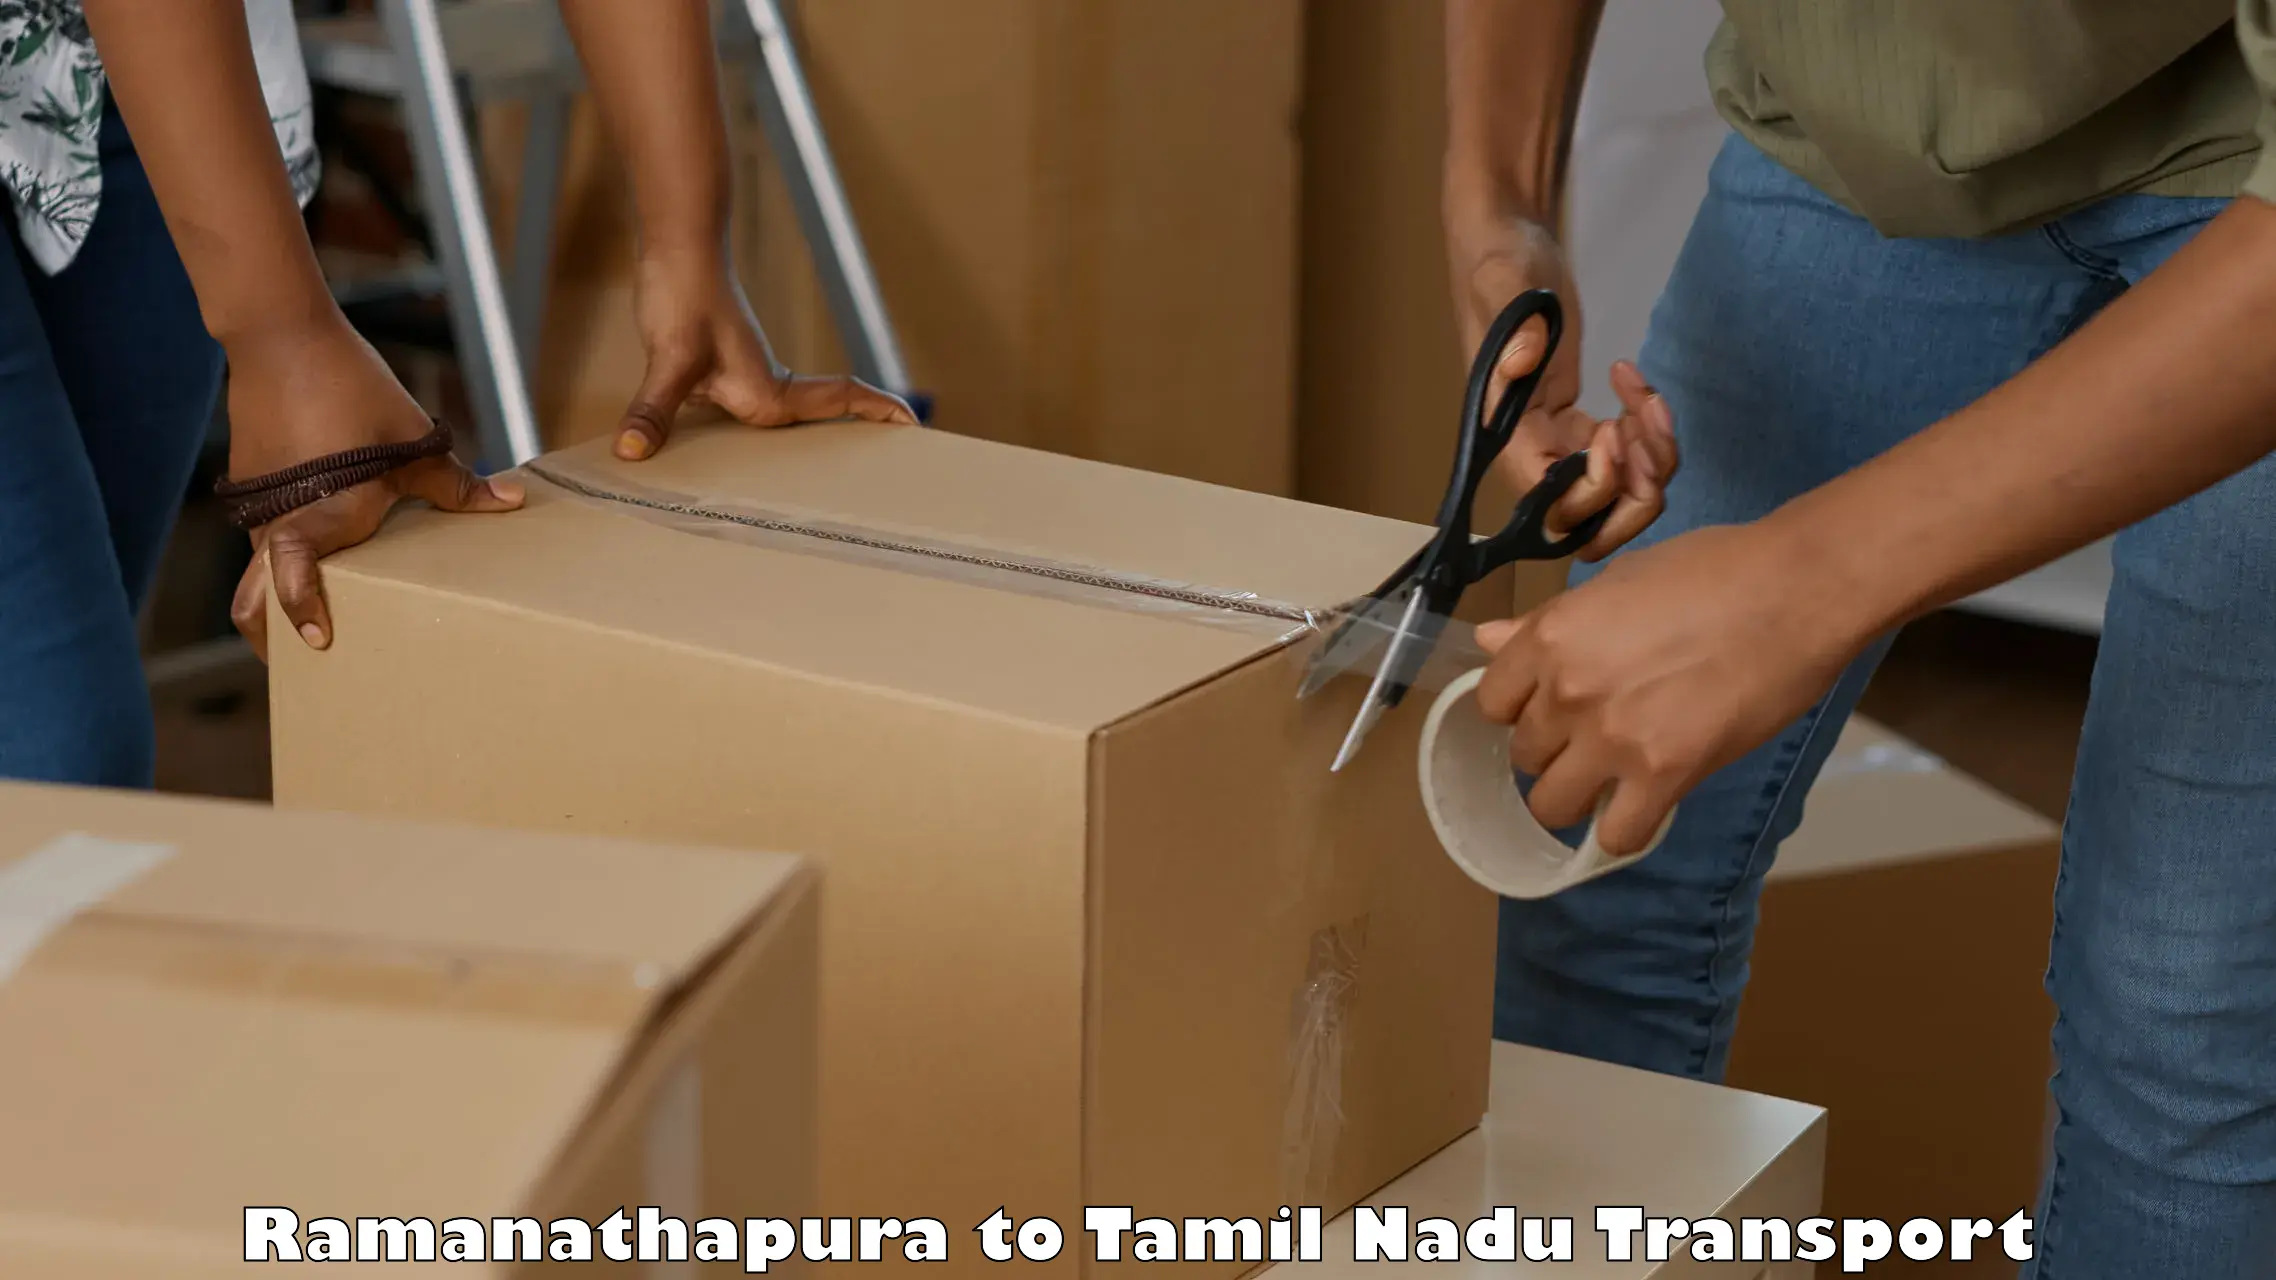 Shipping services Ramanathapura to Thisayanvilai